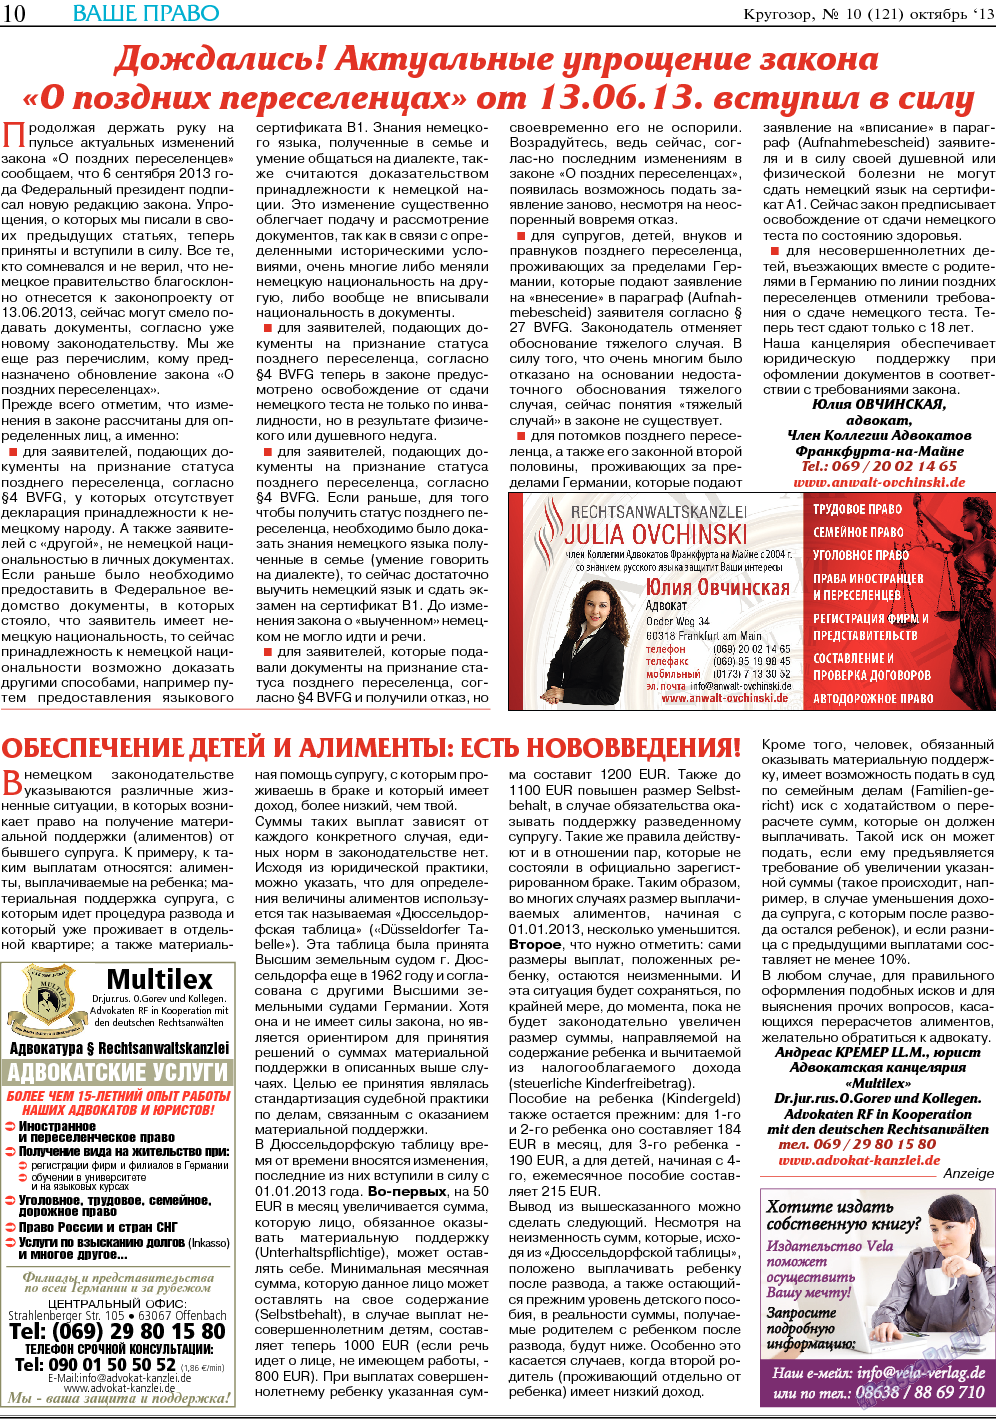 Кругозор, газета. 2013 №10 стр.10